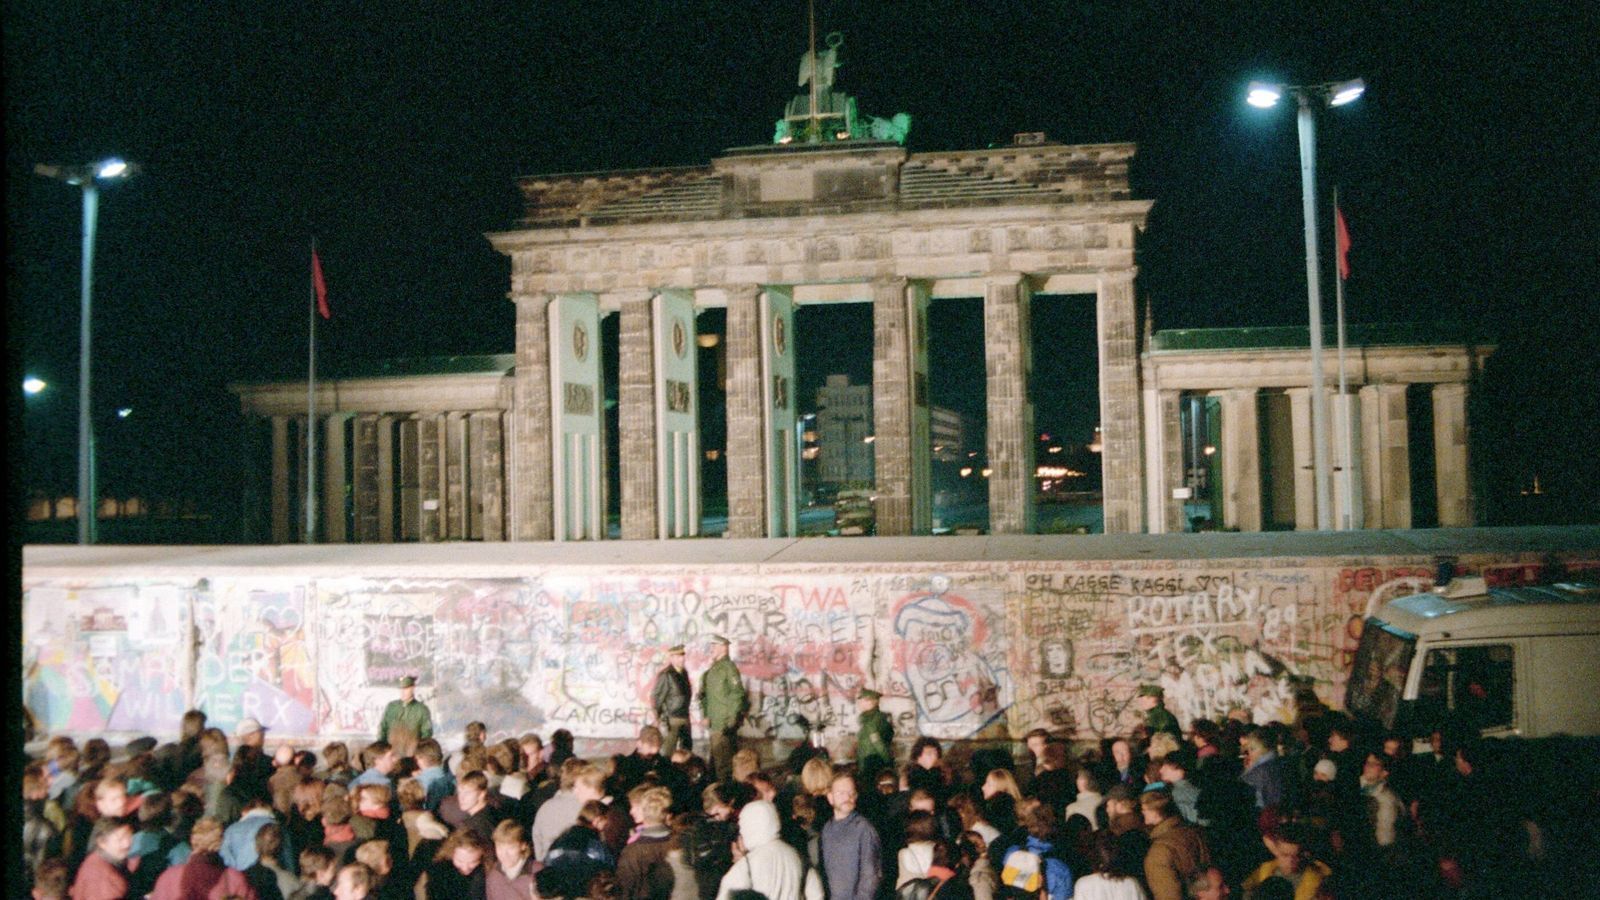 
                <strong>Die deutsche Wiedervereinigung</strong><br>
                Politisch war das Jahr 1990 wohl eines der wichtigsten der deutschen Geschichte. Nach der Öffnung der Berliner Mauer 1989 trat die DDR am 3. Oktober der Bundesrepublik Deutschland bei. Deutschland war wiedervereinigt.
              